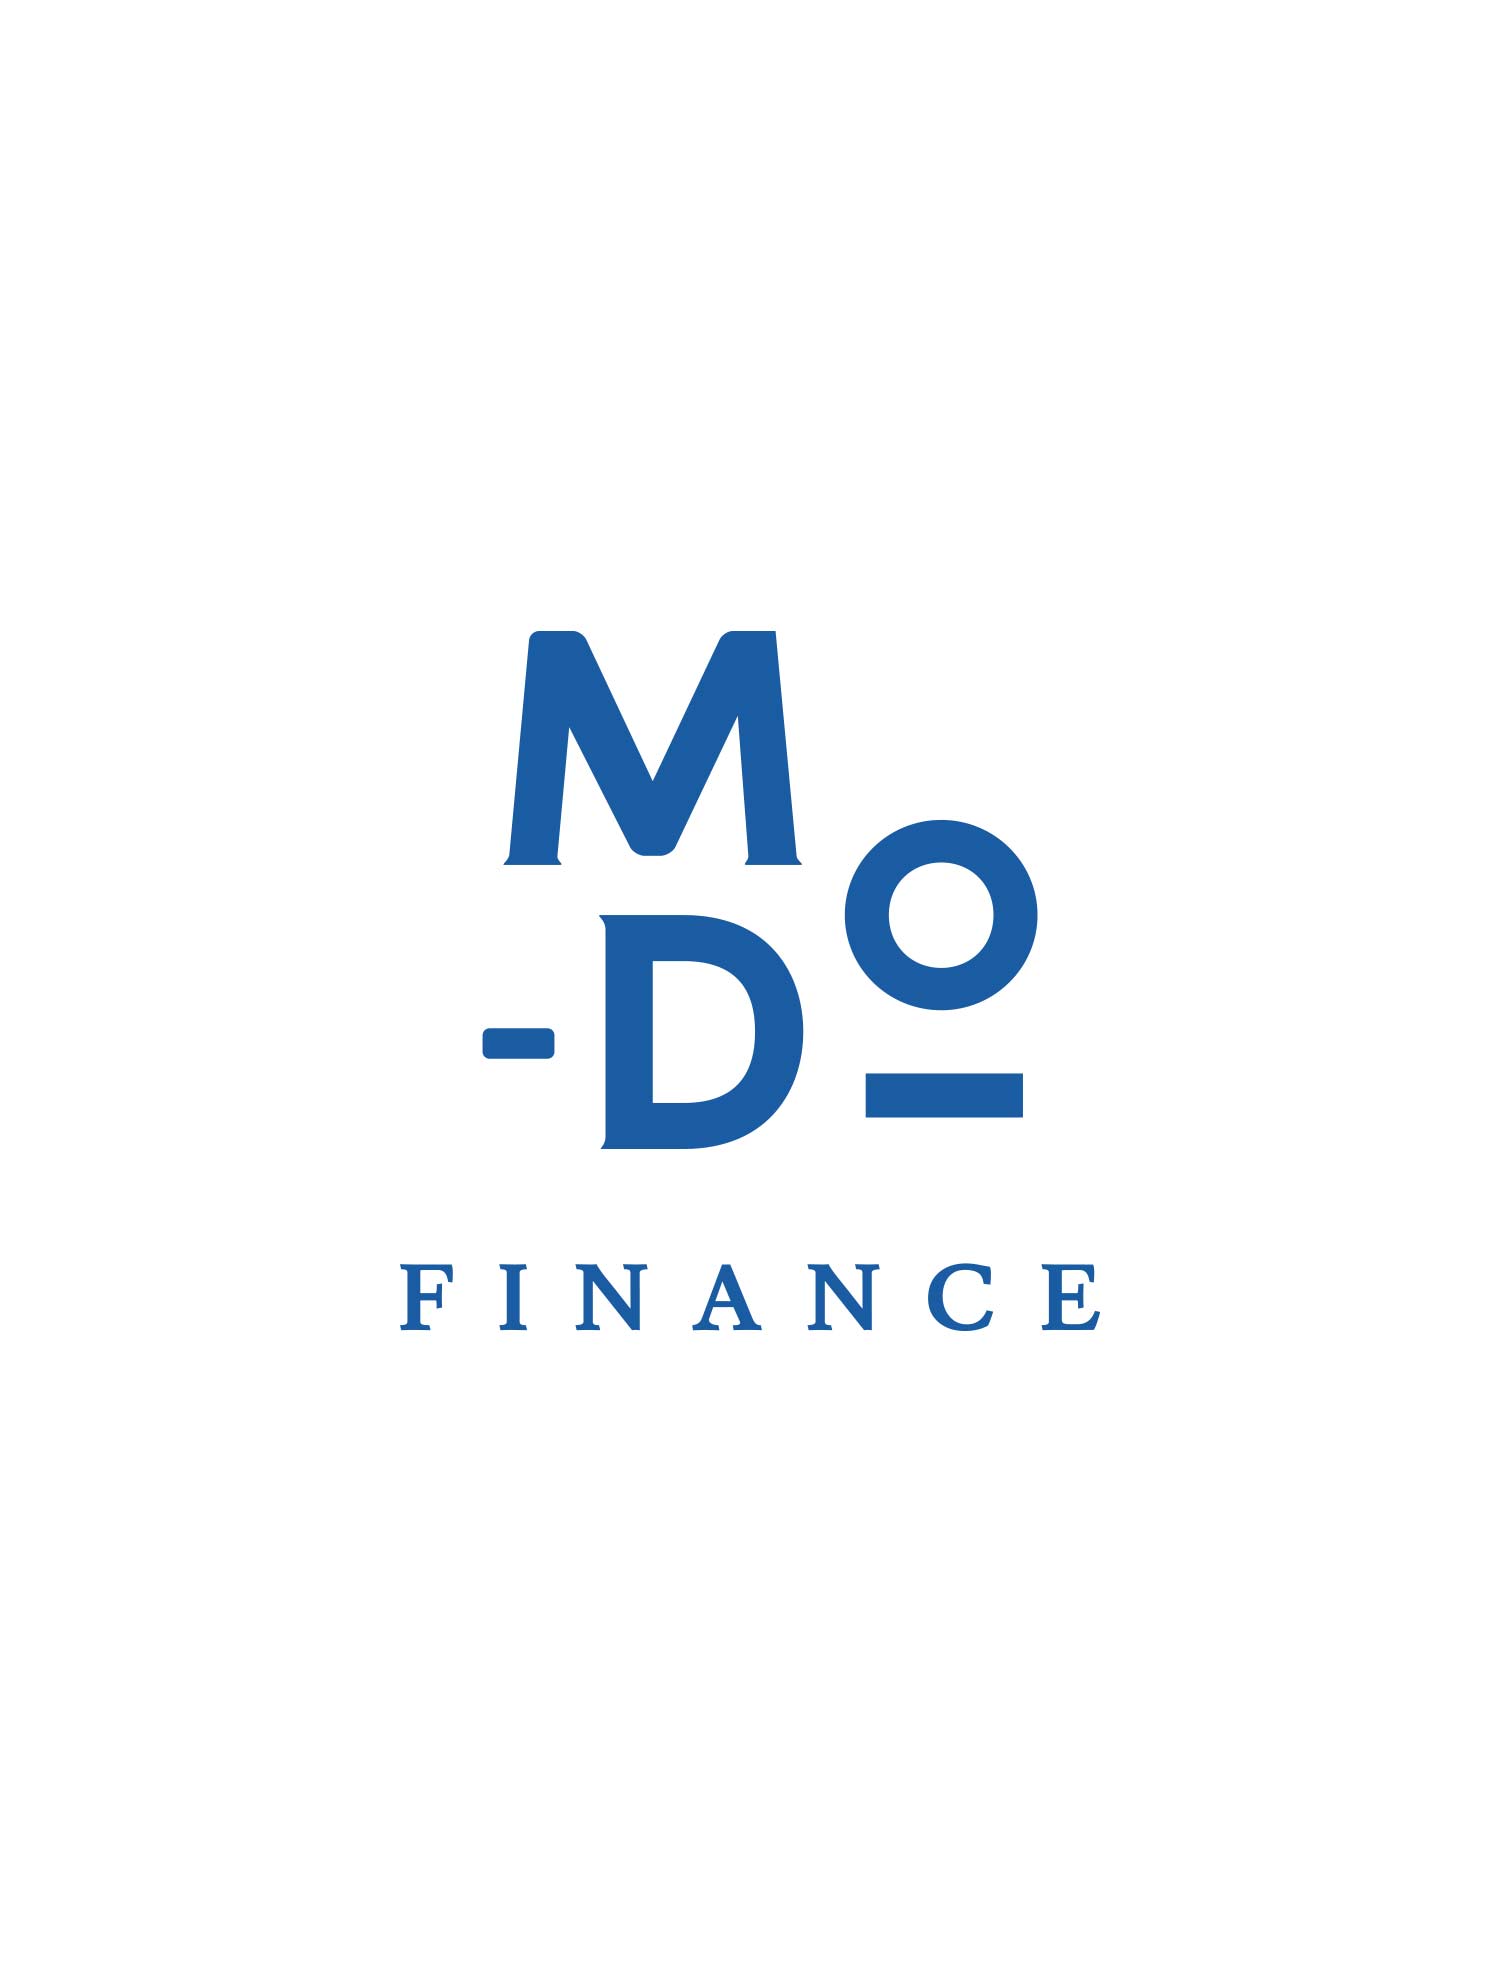 MDO Finance, Conseiller en gestion de patrimoine à Lyon et en Rhône-Alpes.